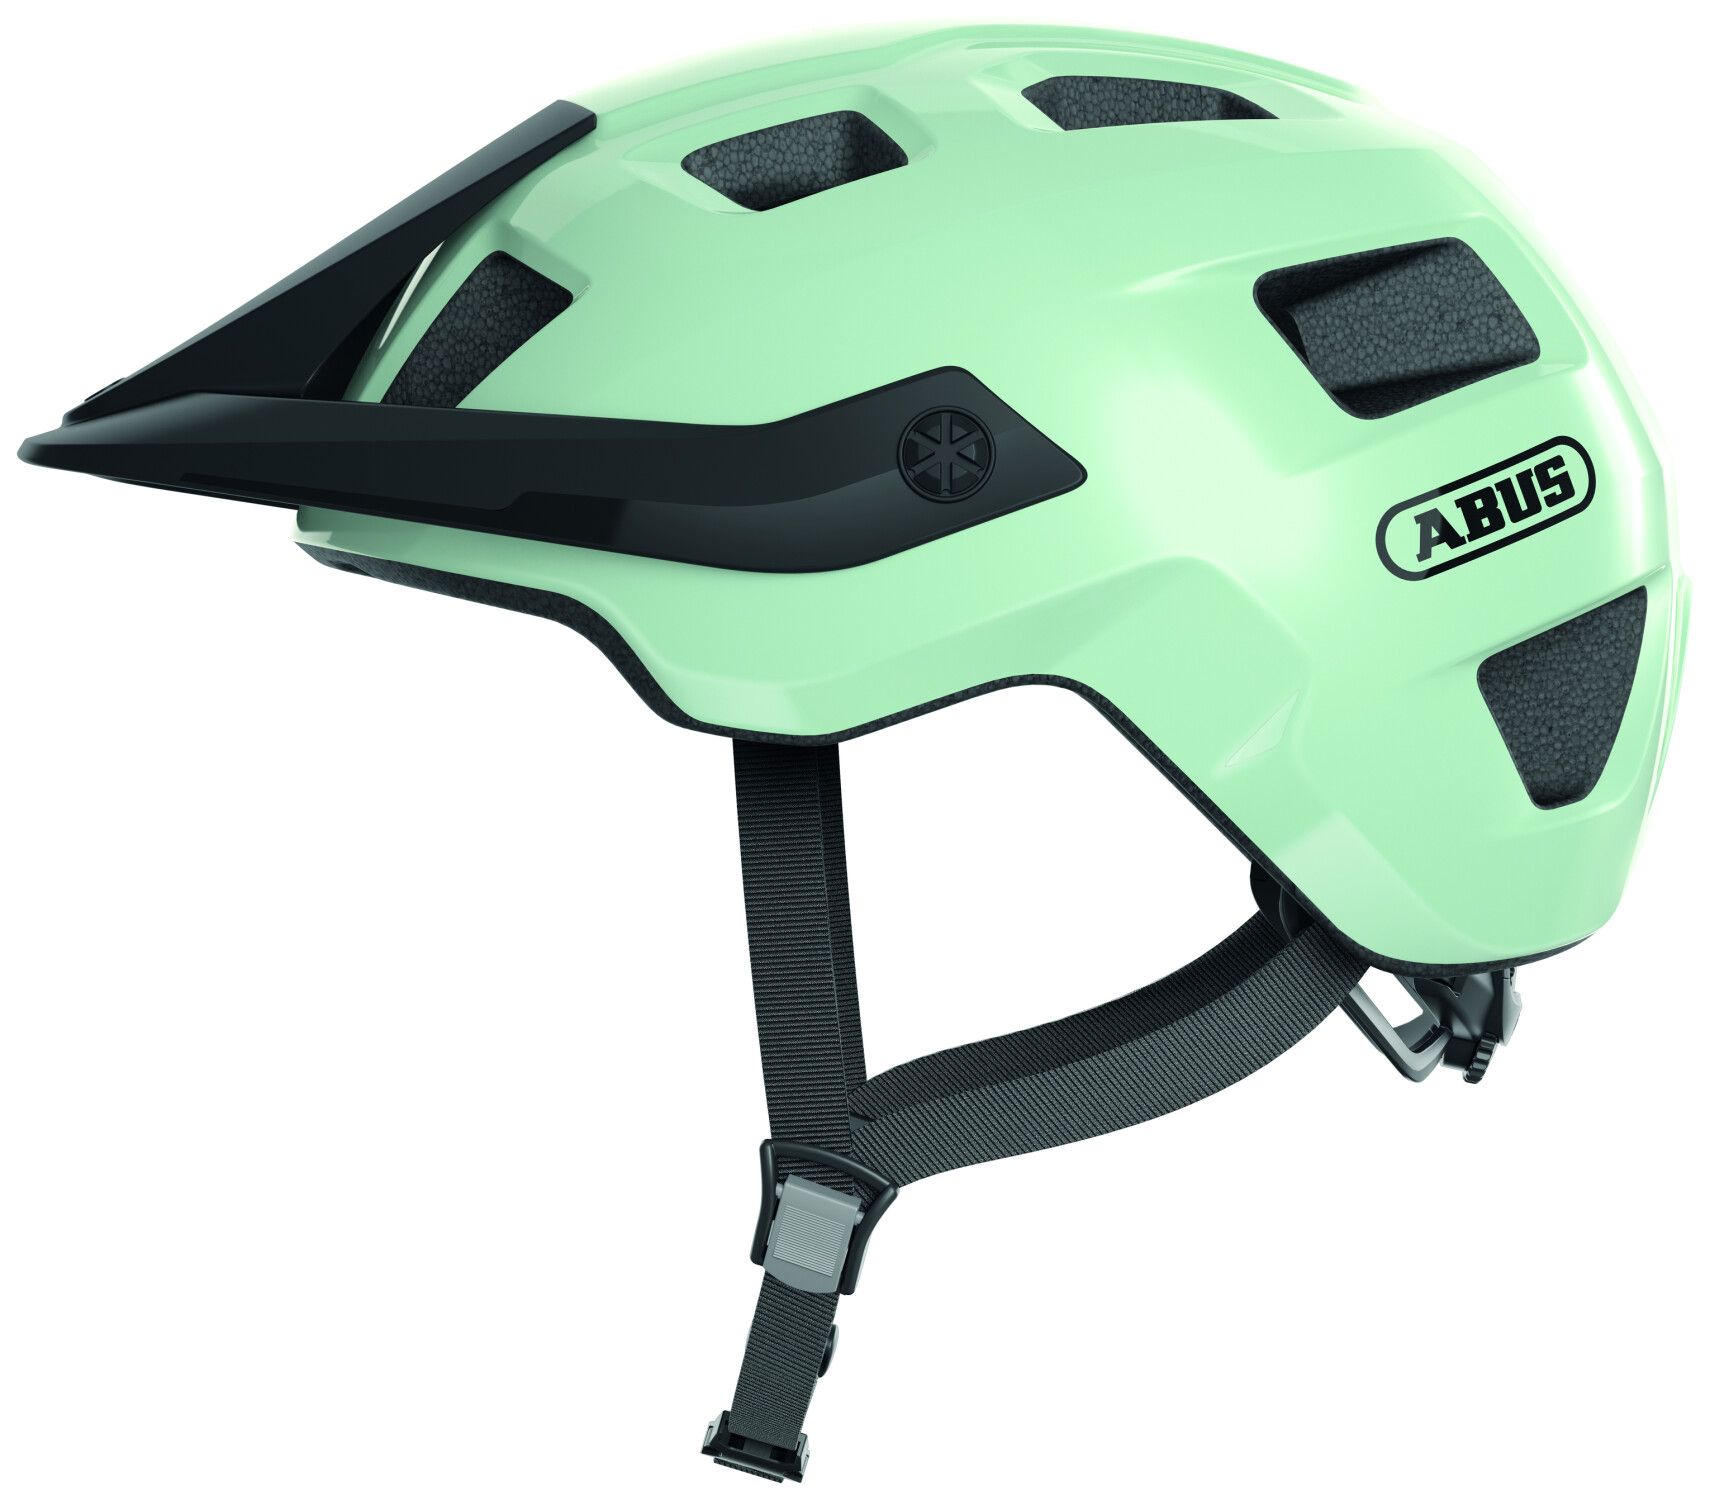 Bild von Sportscheck Mountainbike Helm MoTrip